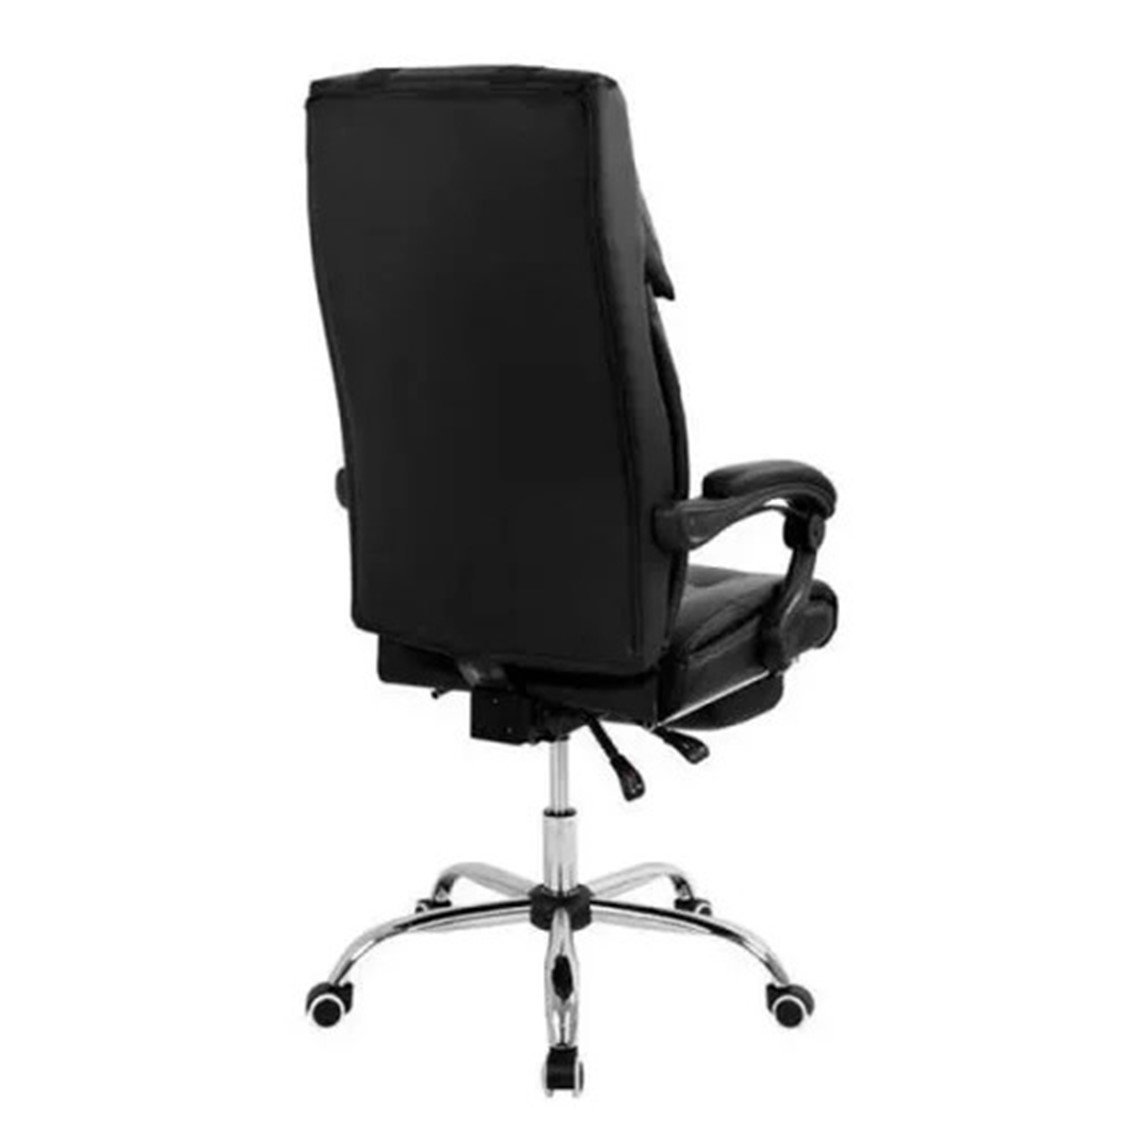 Cadeira Presidente Premium C300 com Regulagem e Apoio para Os Pés Rpc Preta - 4